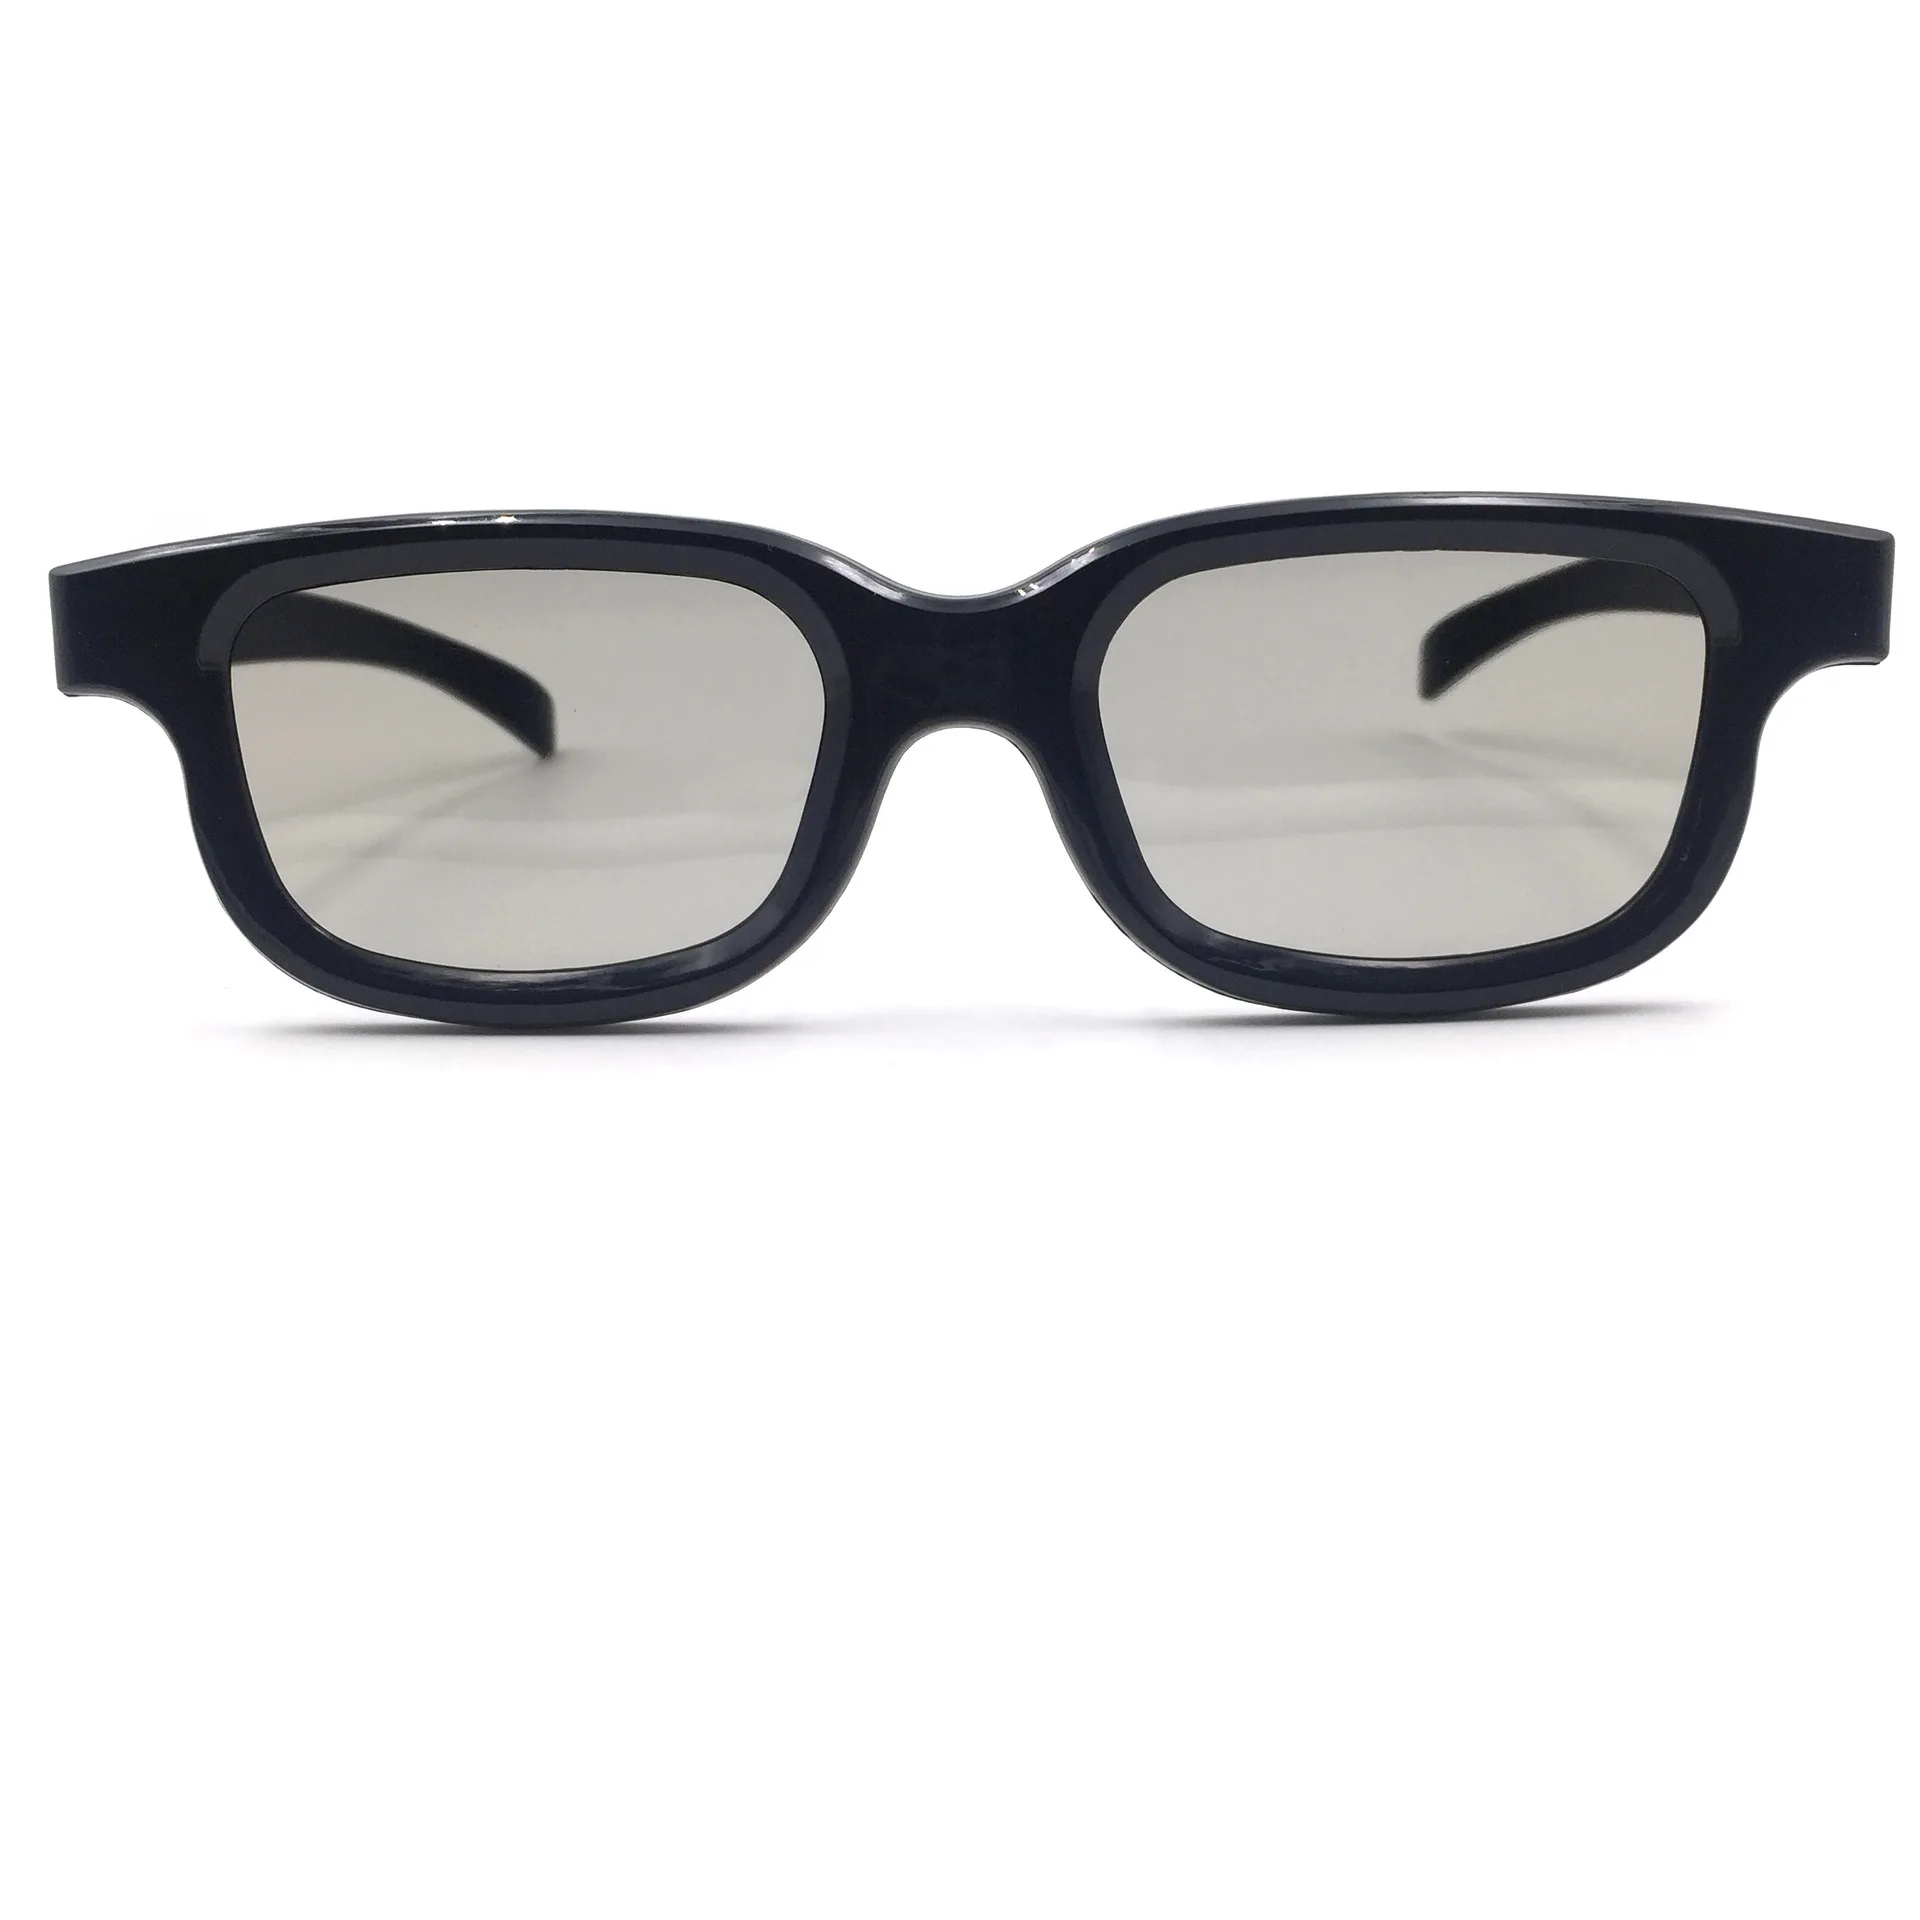 3D очки театральные только для взрослых абзац черный и белый с рисунком рамки от производителя прямые продажи